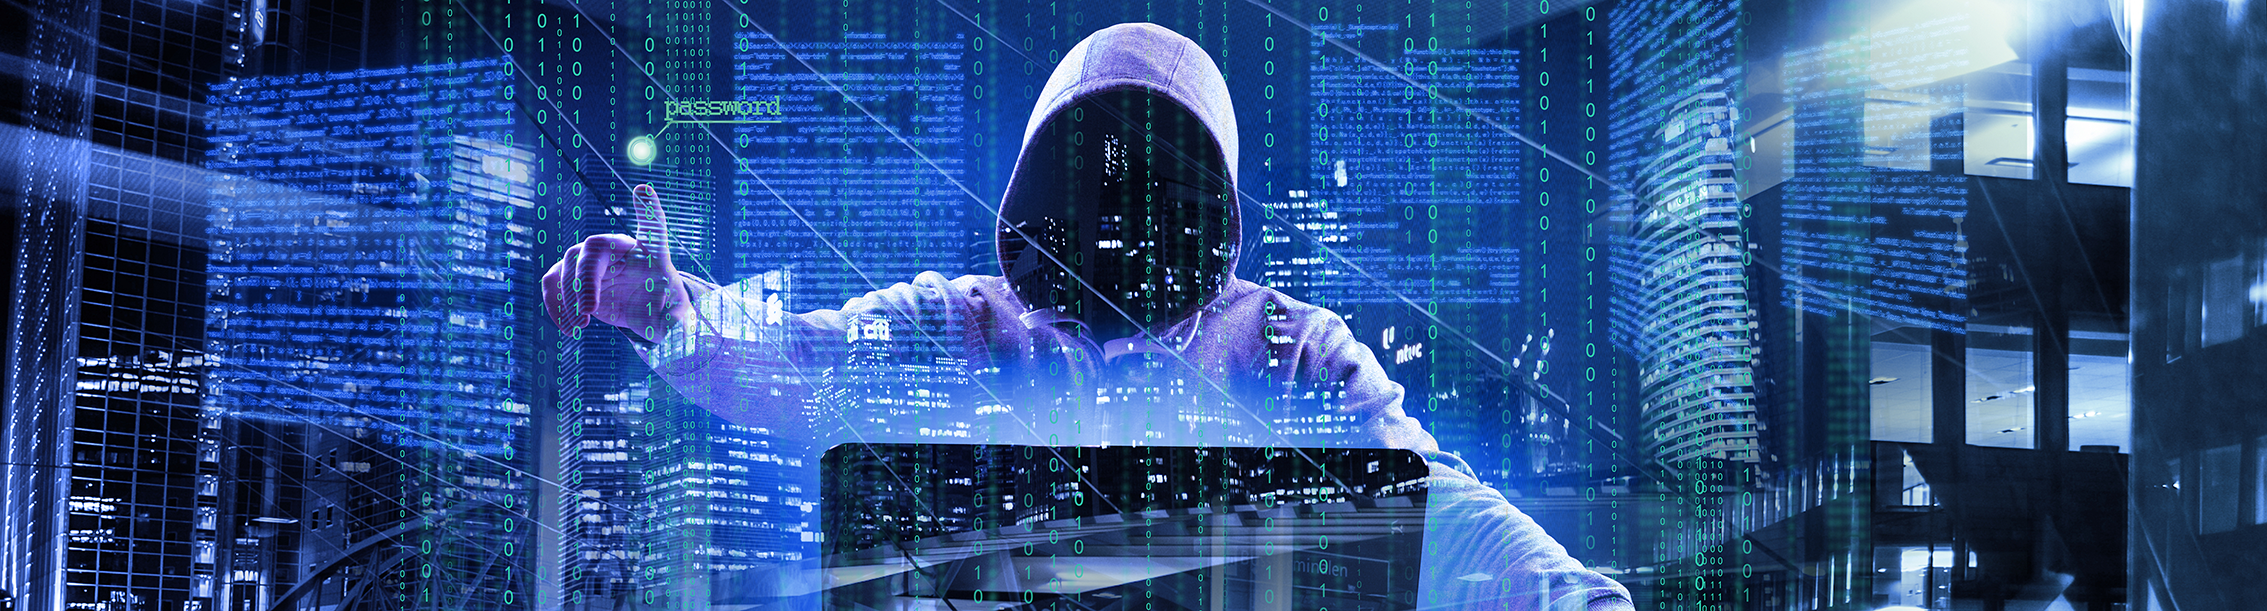 Persona con capucha frente a la computadora porque los ataques cibernéticos tienen como objetivo a los bancos